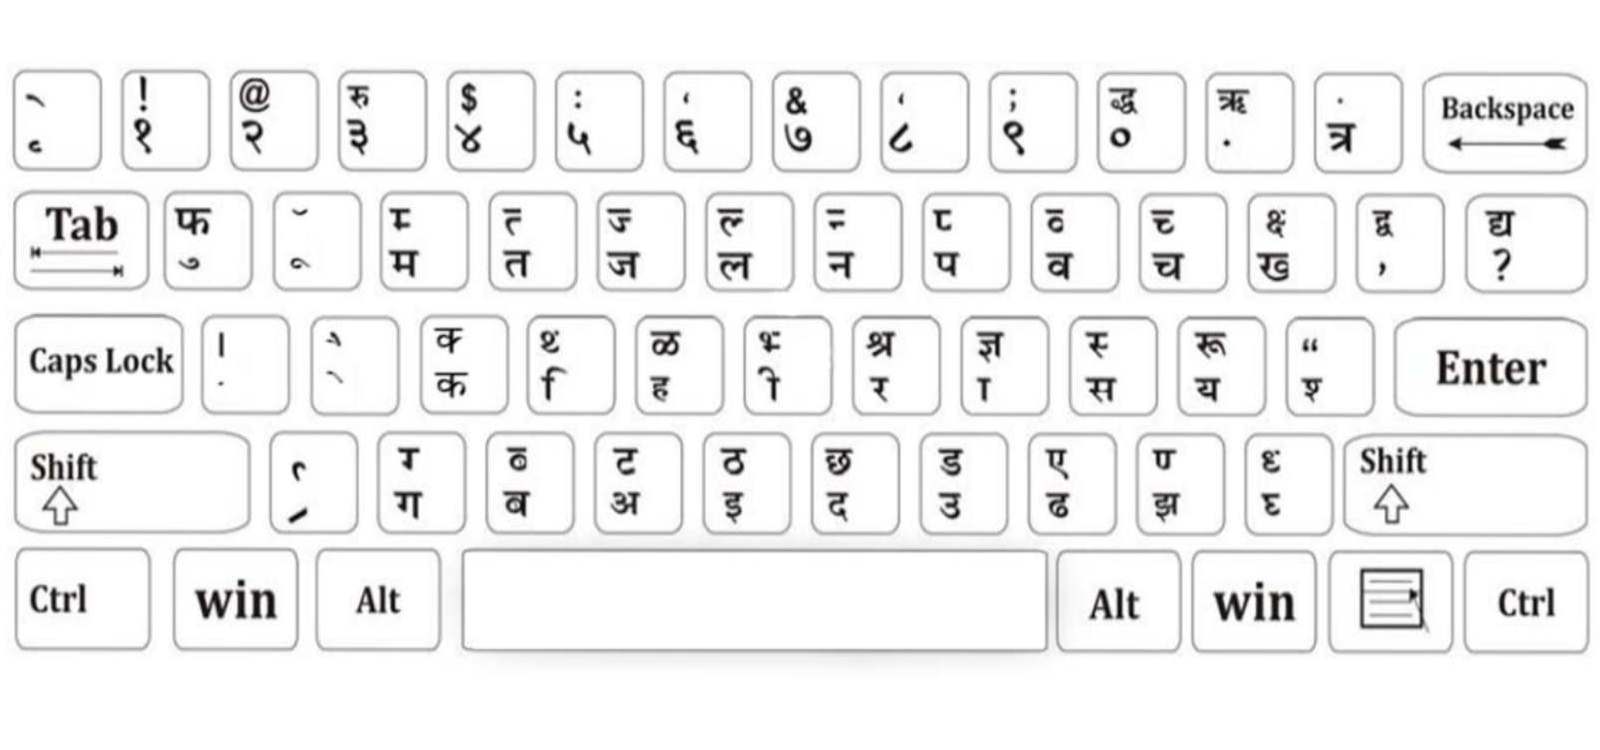 Online Hindi Typing Test in Kruti Dev Font | Hindi Typing Tutor and WPM  Test | 5 Minutes